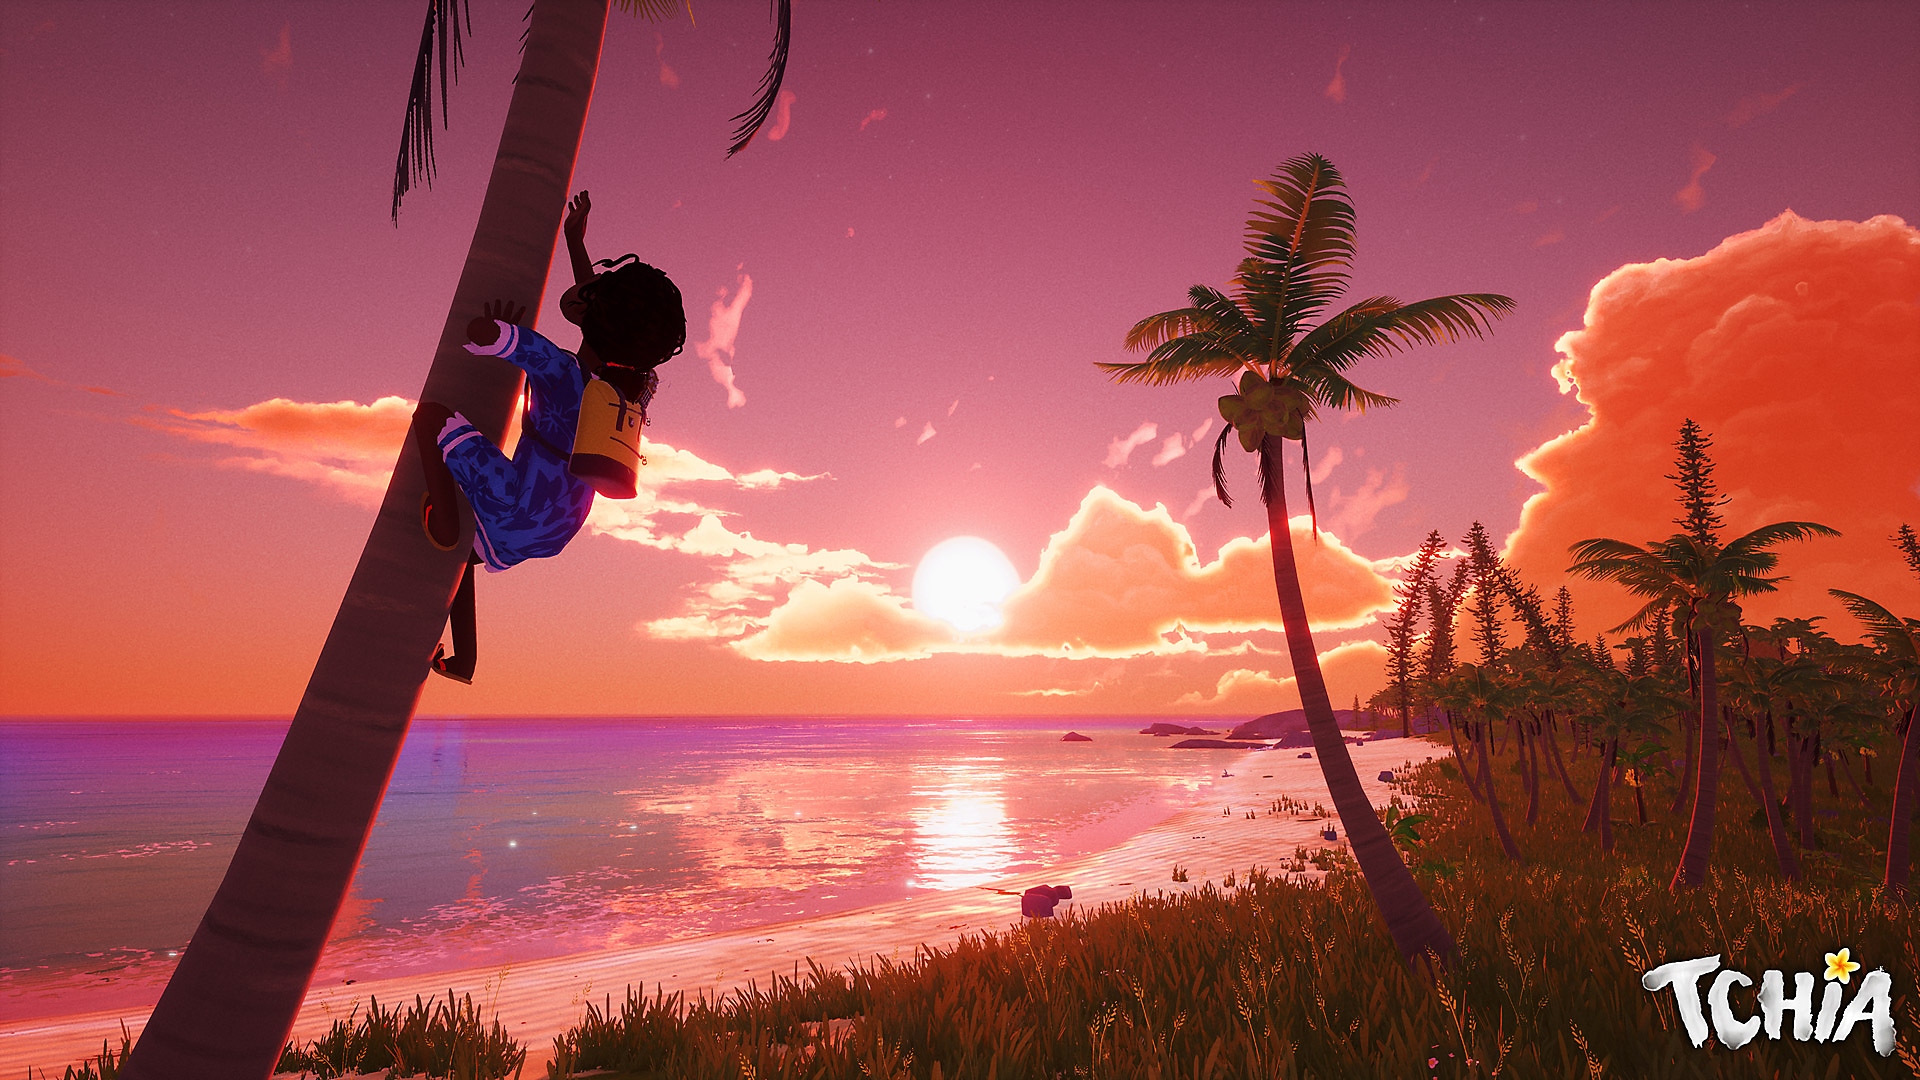 Tchia – snímek obrazovky s hlavní postavou šplhající na strom s krásným západem slunce v pozadí